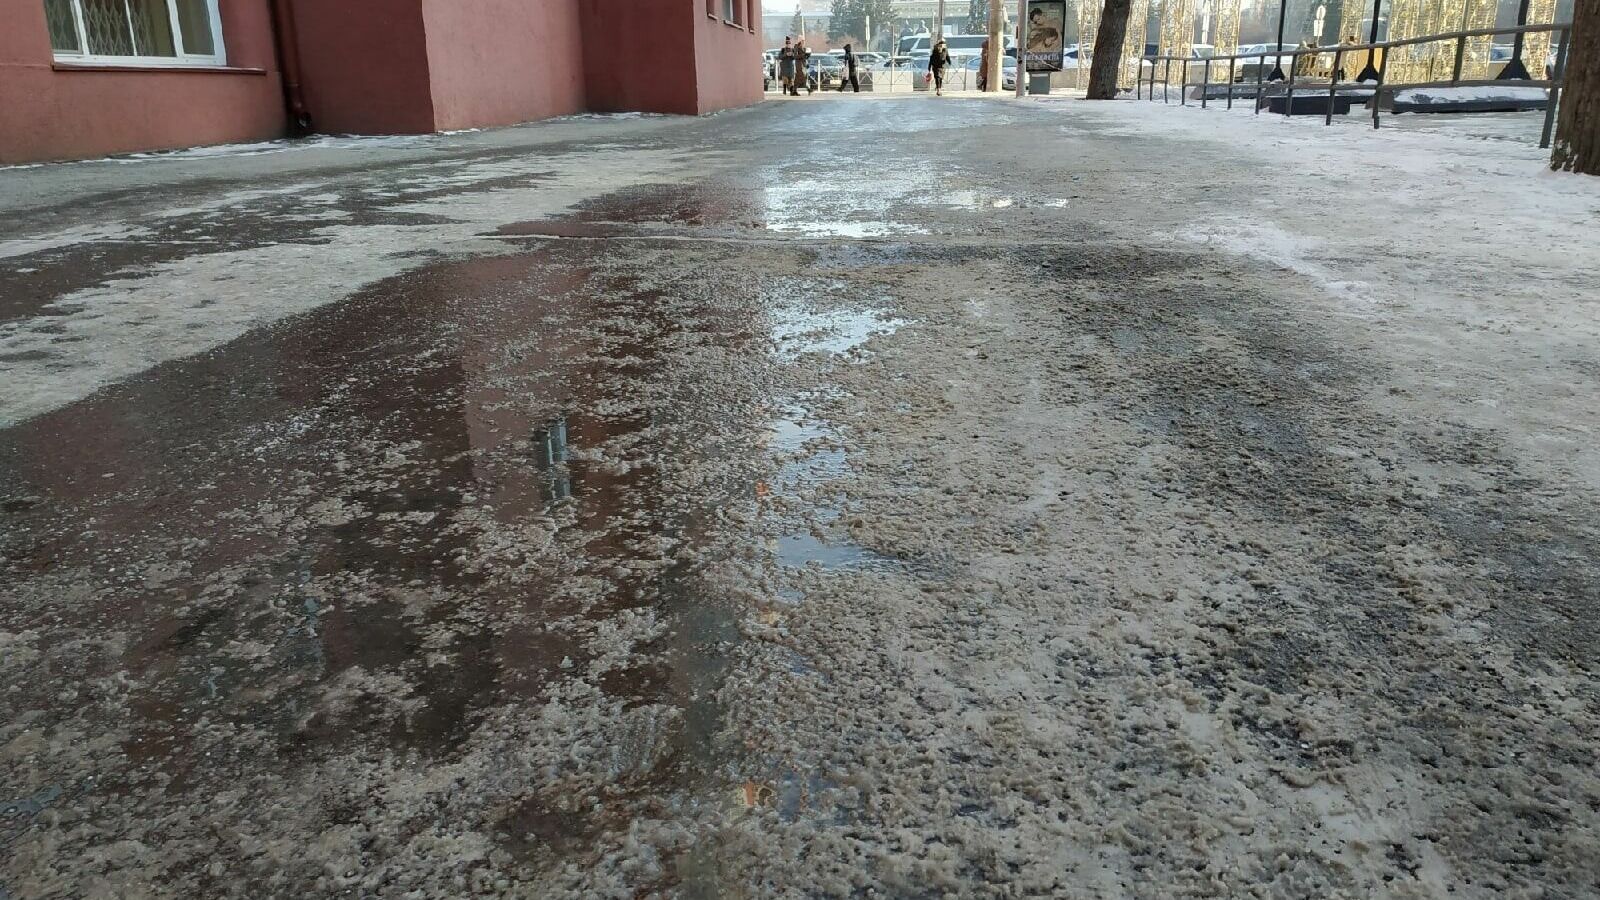 Для морозной погоды тротуар на улице Ленина выглядит странно